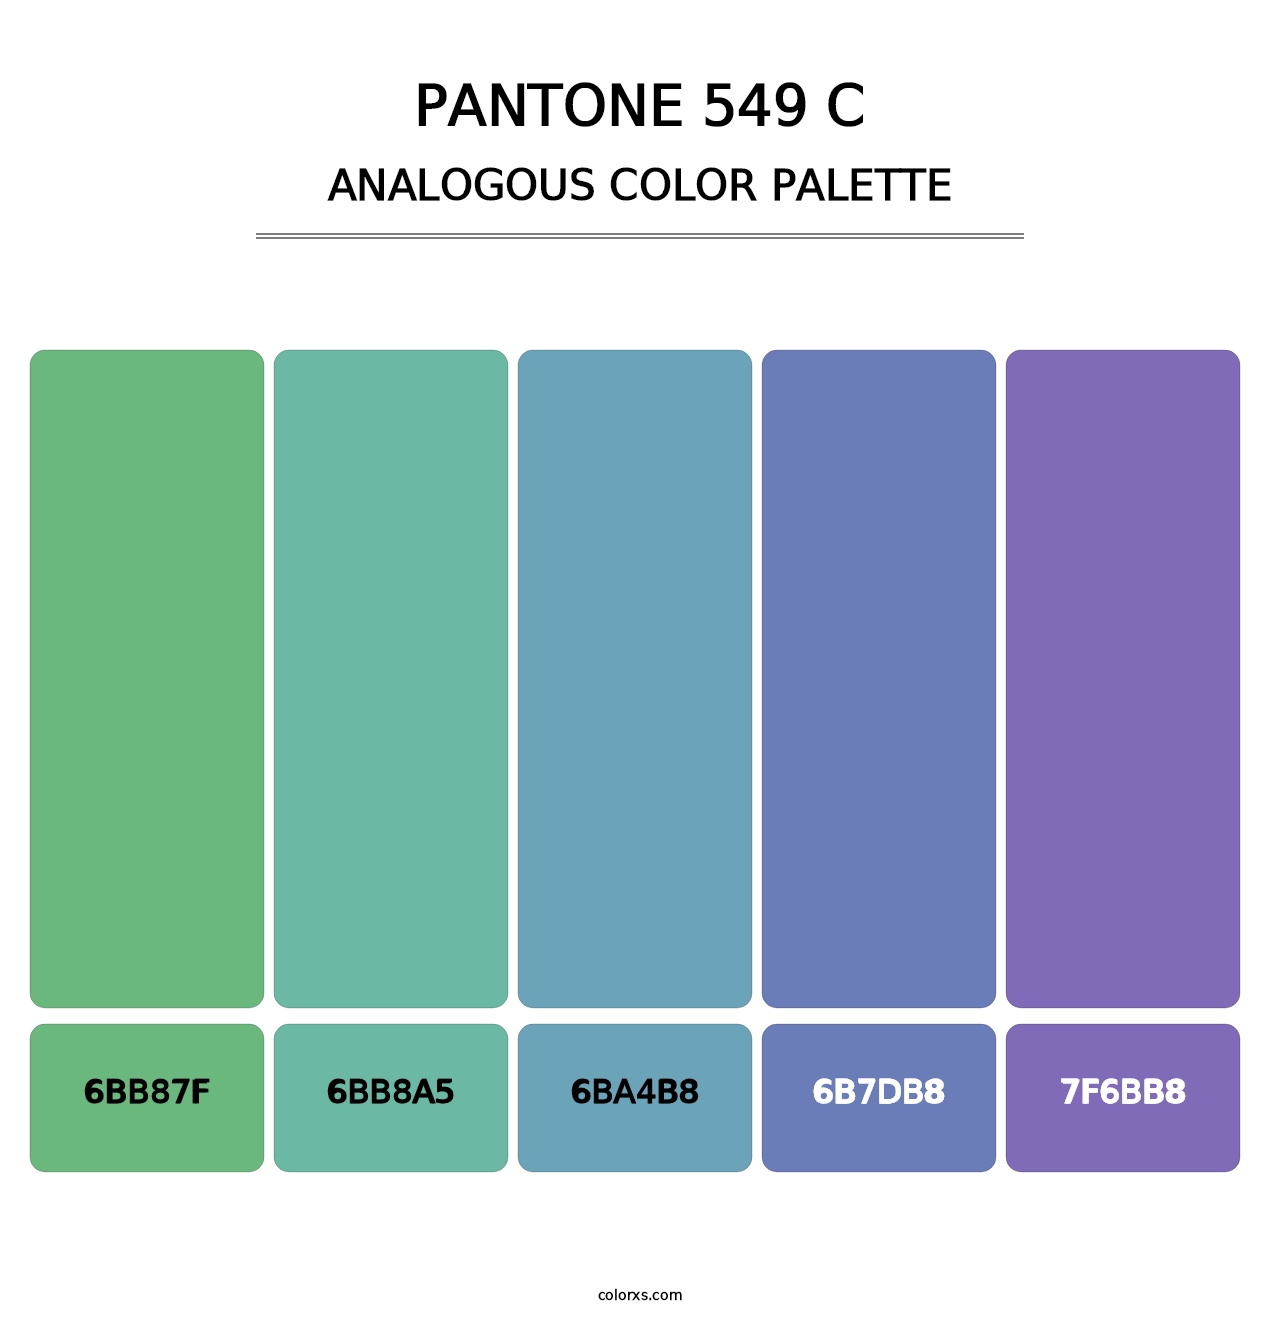 PANTONE 549 C - Analogous Color Palette